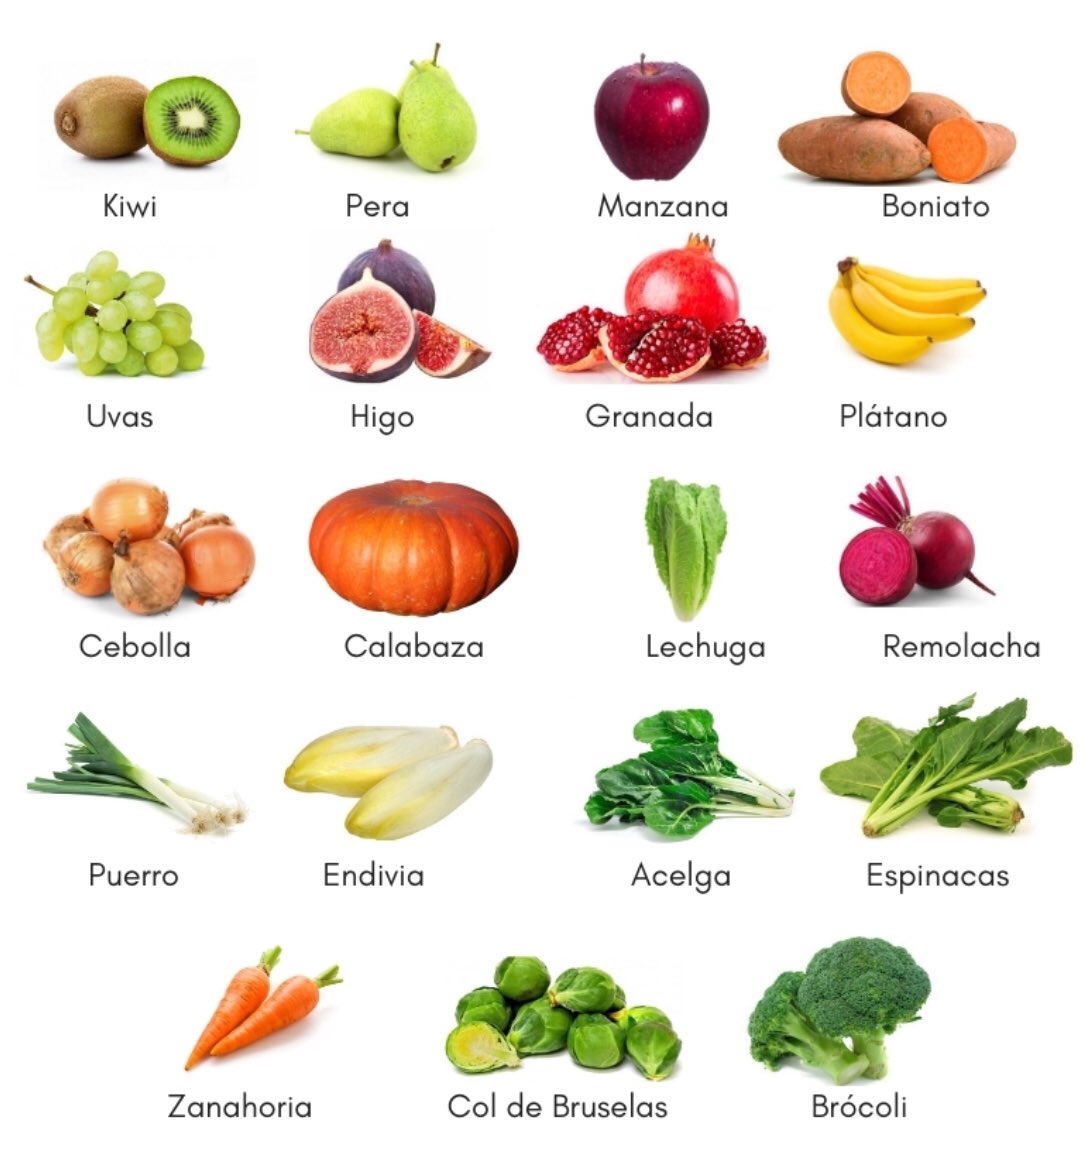 Mañana sera #Octubre 
Las verduras y frutas de este mes son de mis preferidas ¡Mucho sabor! Como la #Alcachofa o la #Calabaza. ¿Recetas socorridas y sanas?

-Cremas
-Verduras al horno
-Guisos
-Ramen

#Nutricion #Alimentacion #Salud #Productosdetemporada #ProductosdeCercania